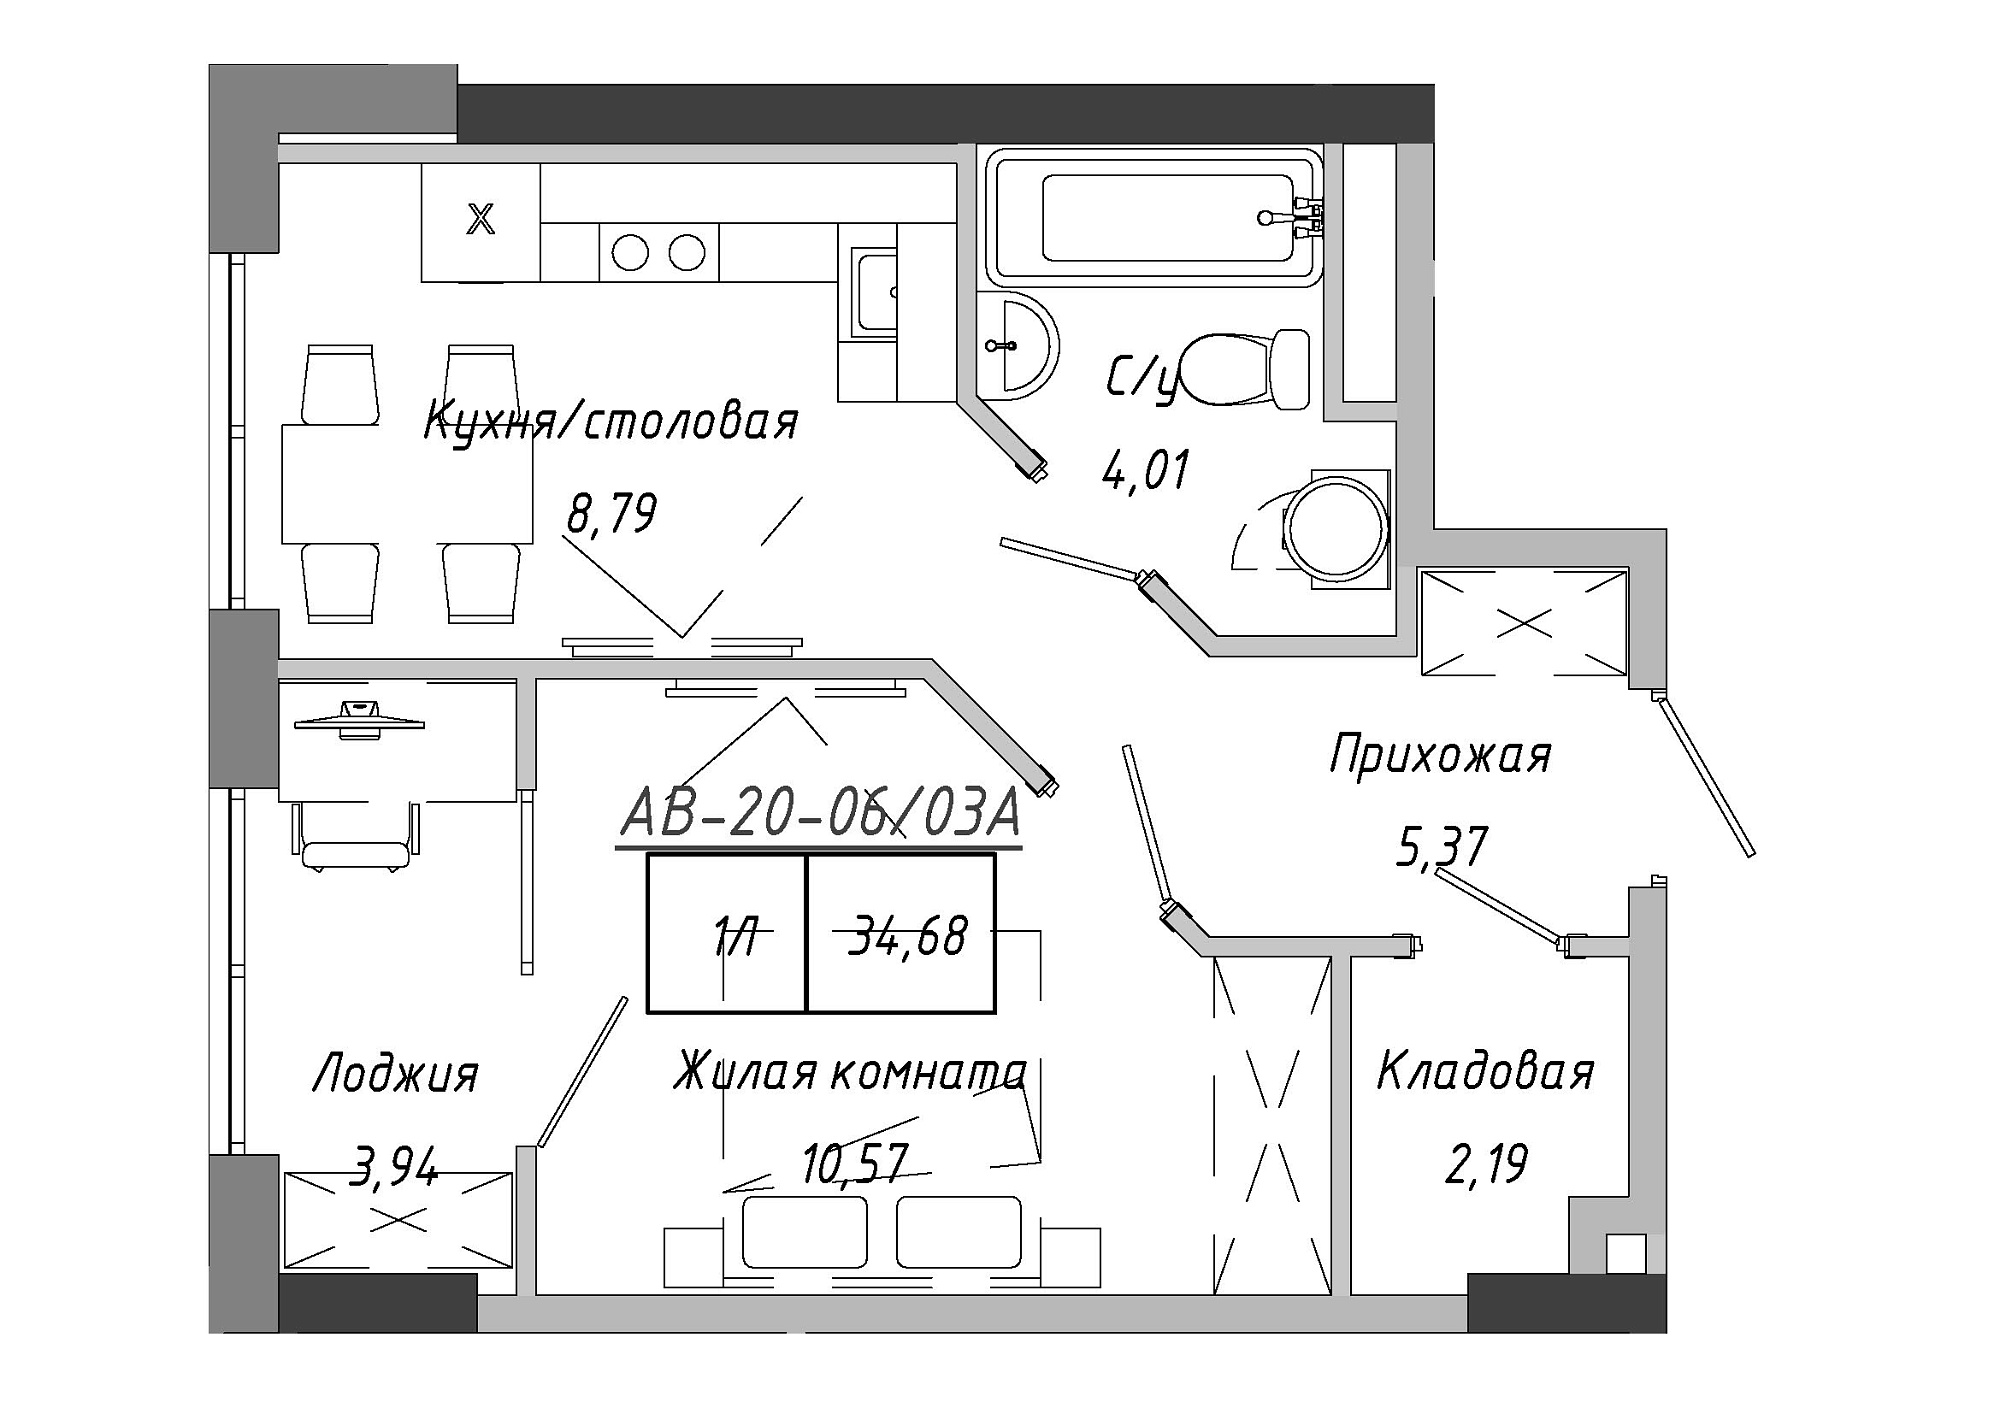 Планування 1-к квартира площею 35.26м2, AB-20-06/0003а.